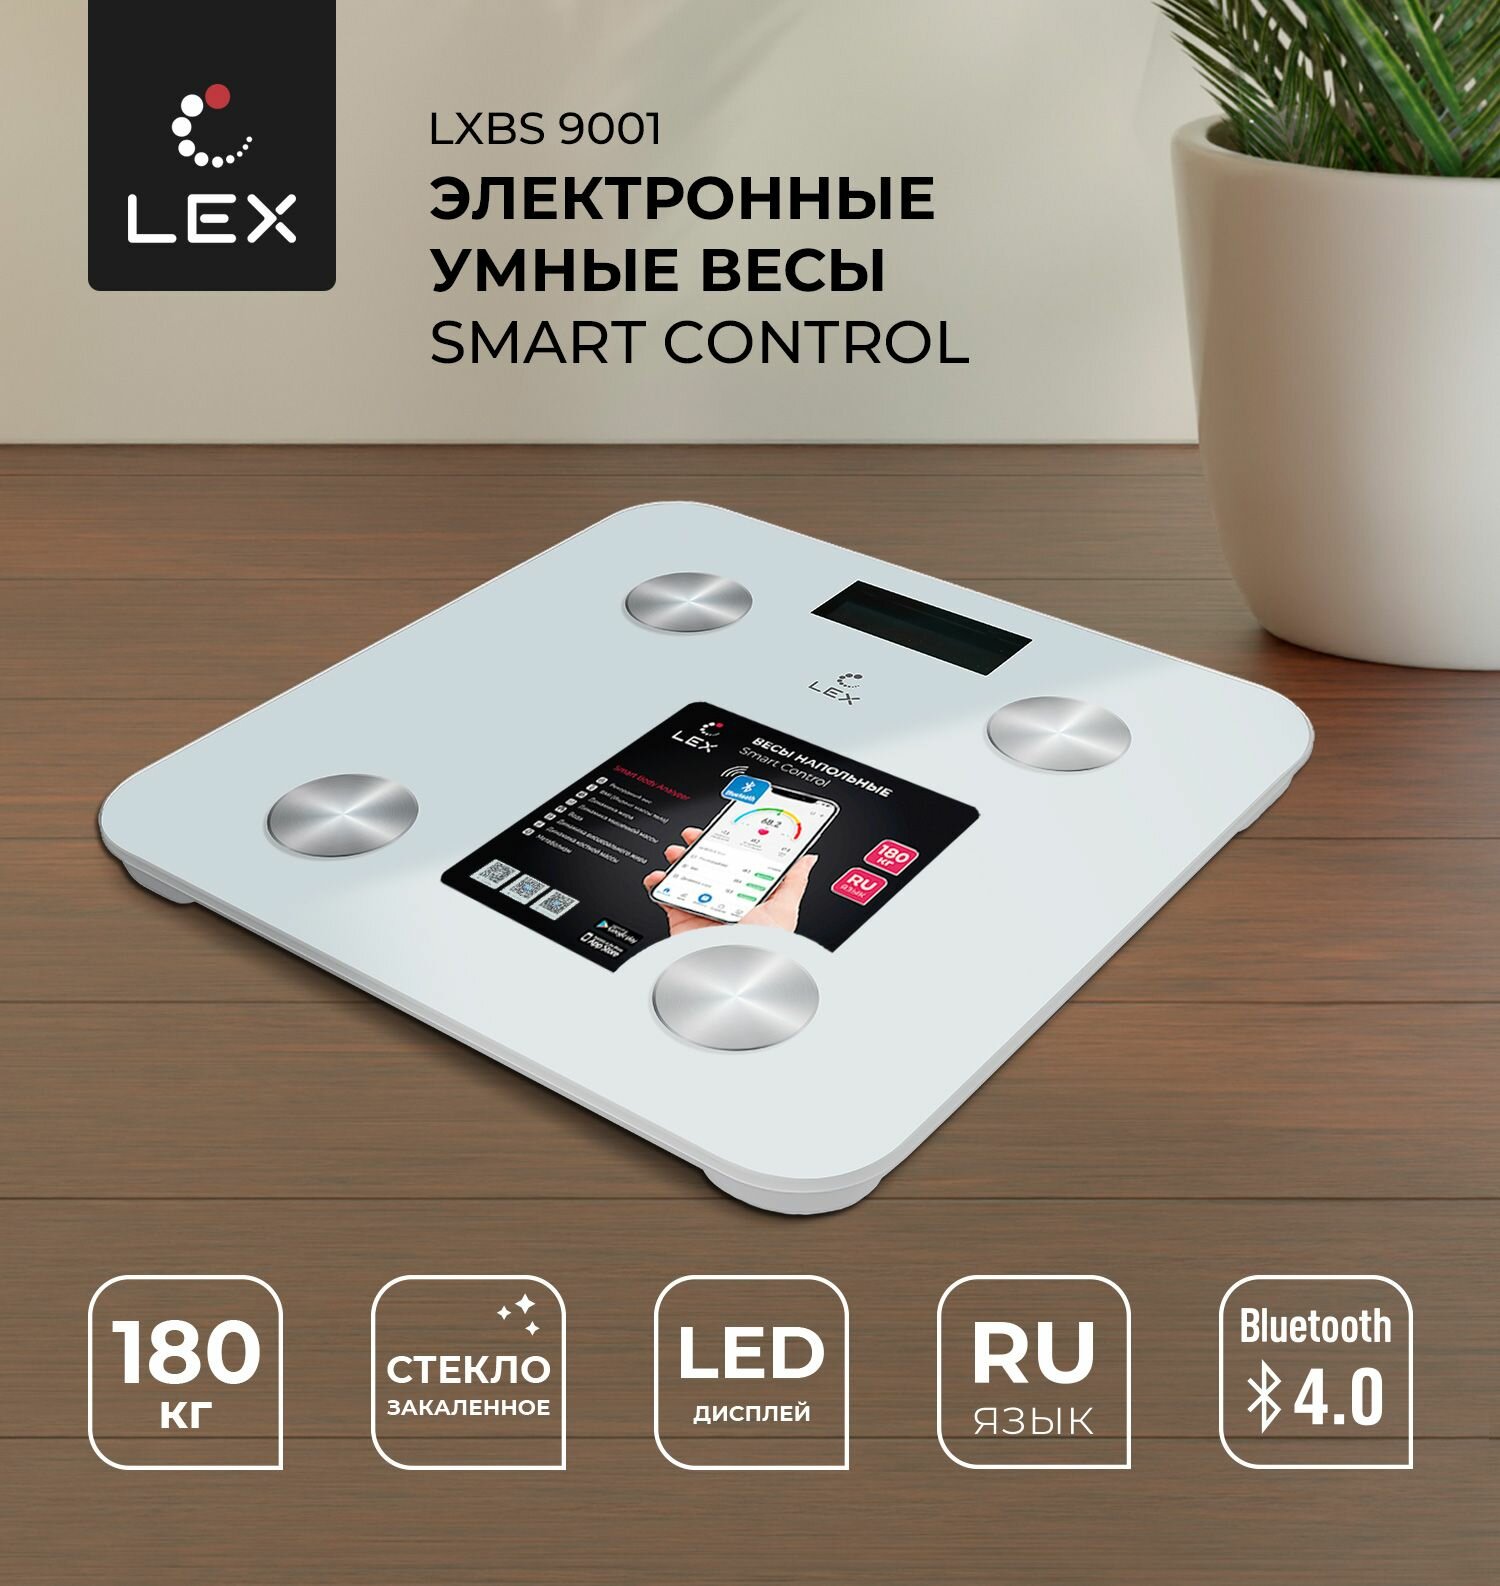 Напольные электронные умные весы Lex LXBS 9001 SMART CONTROL стеклянные до 180кг Bluetooth